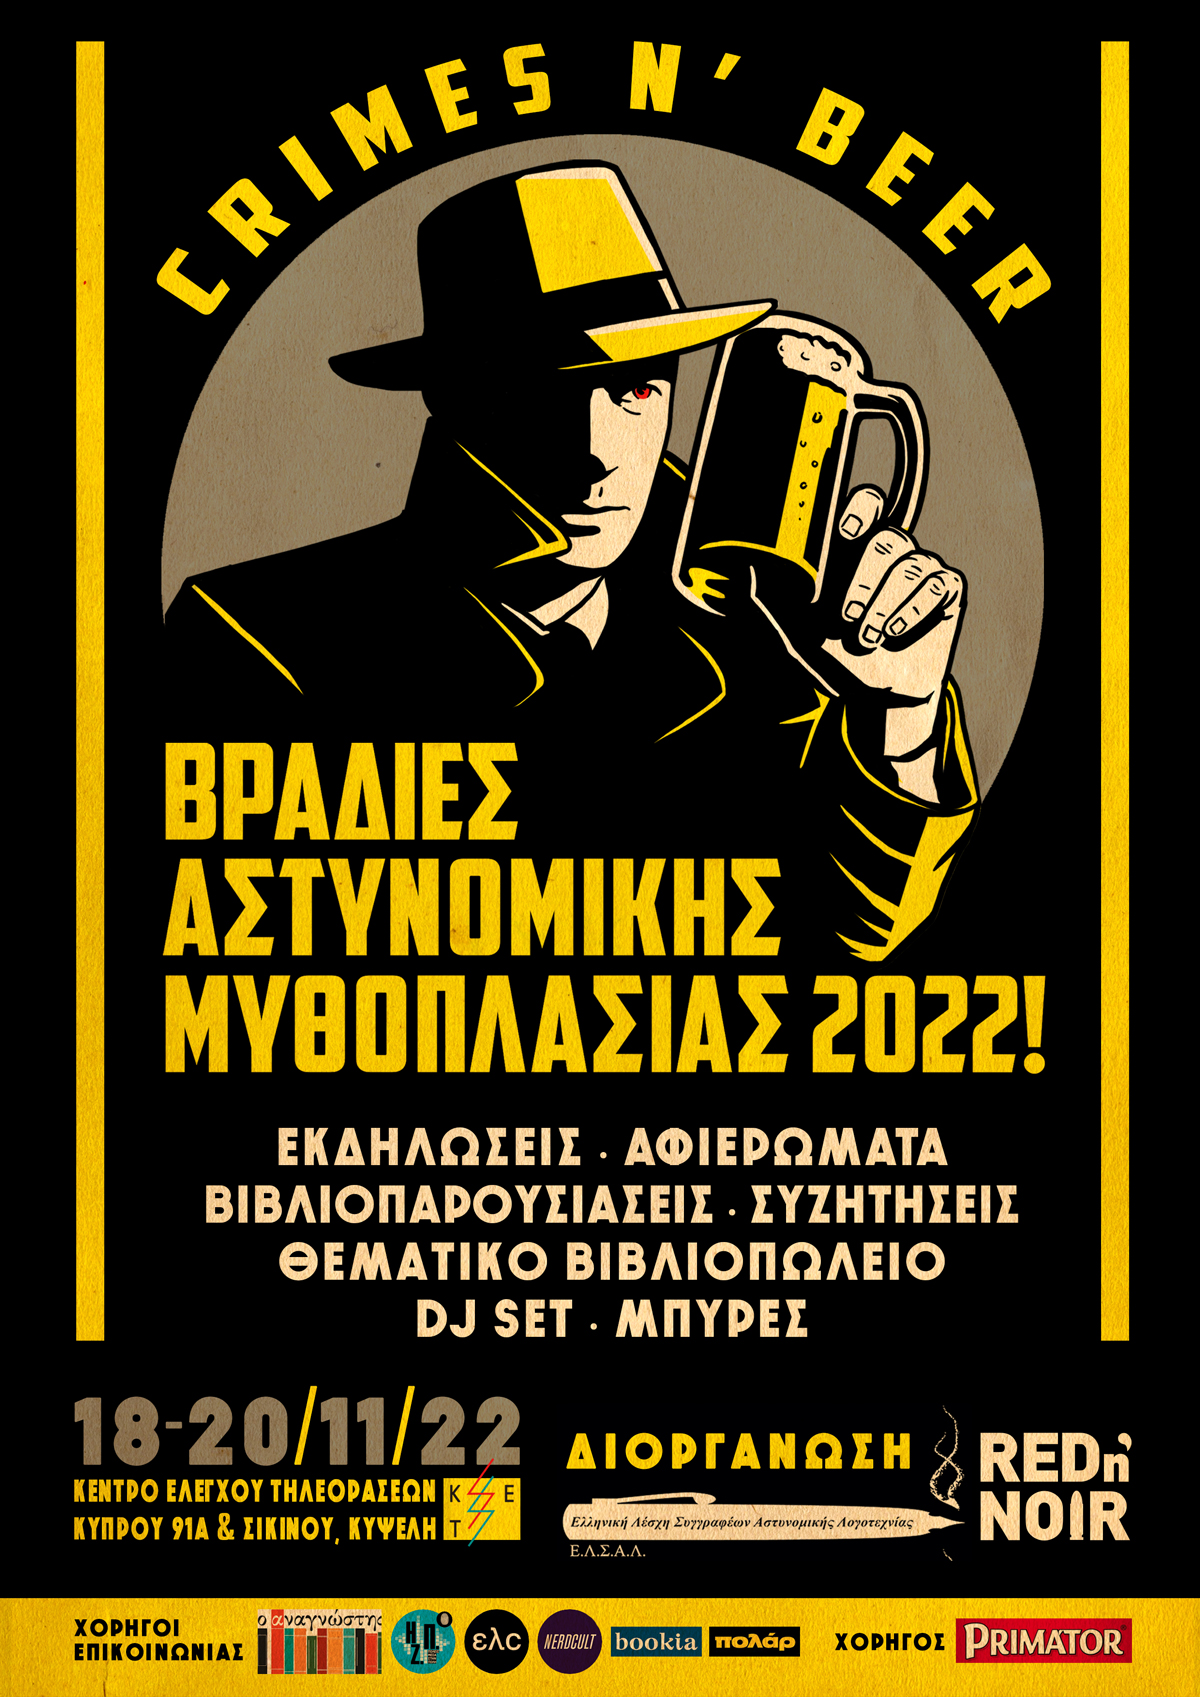 Βραδιές αστυνομικής μυθοπλασίας 2022! (crimes n’ beer)